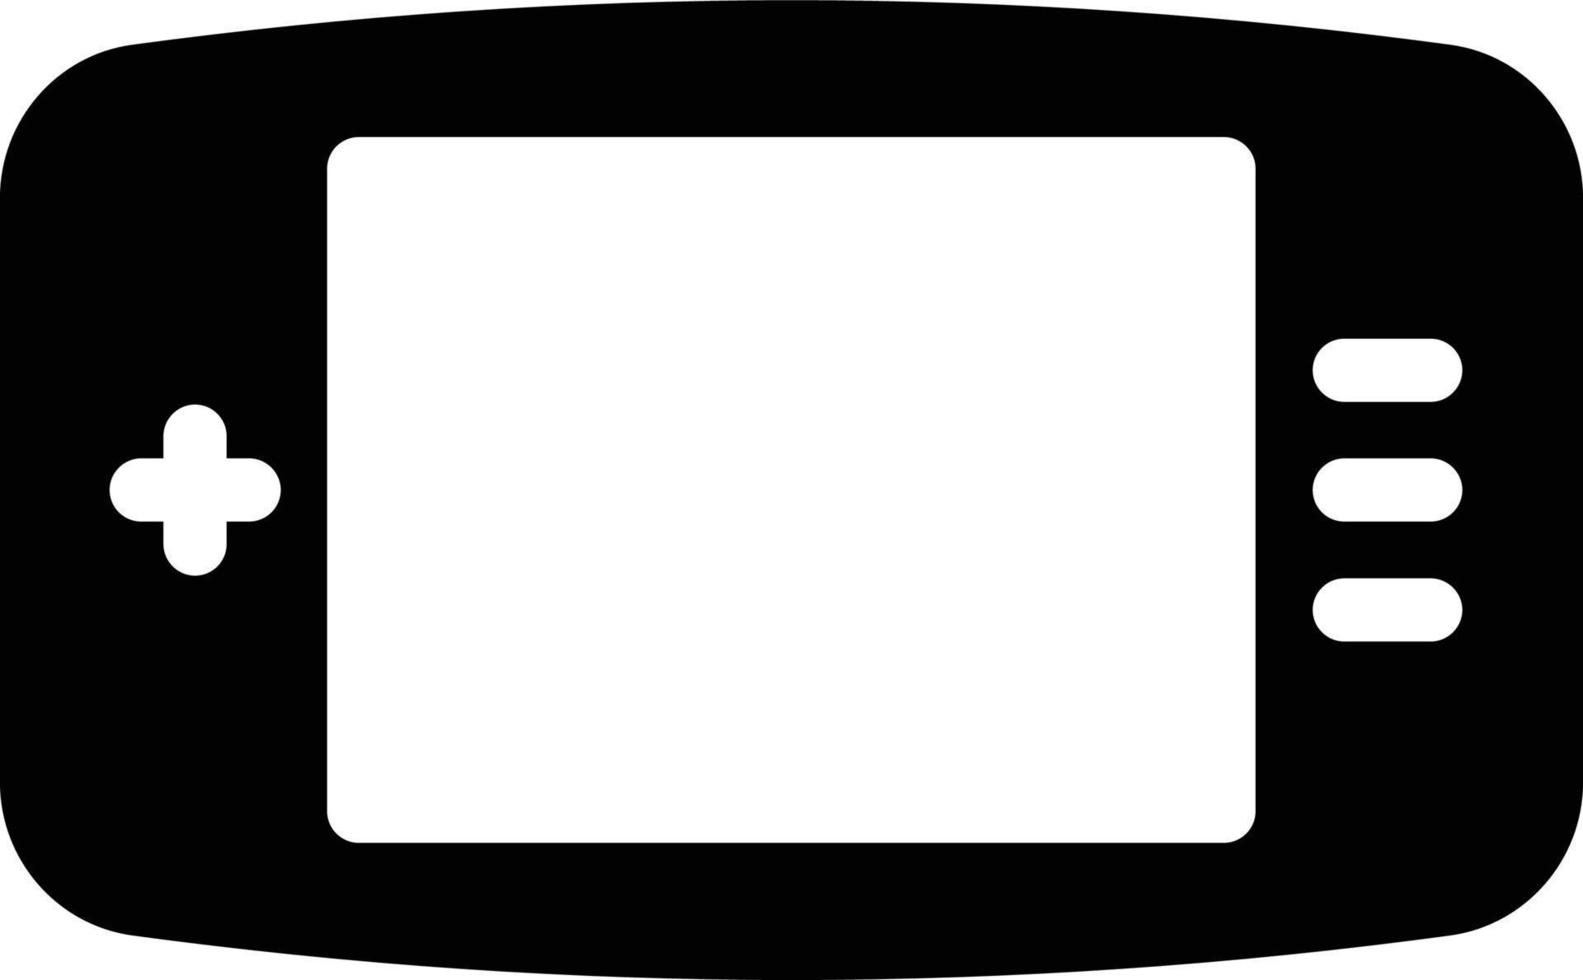 illustrazione vettoriale del gamepad su uno sfondo. simboli di qualità premium. icone vettoriali per il concetto e la progettazione grafica.